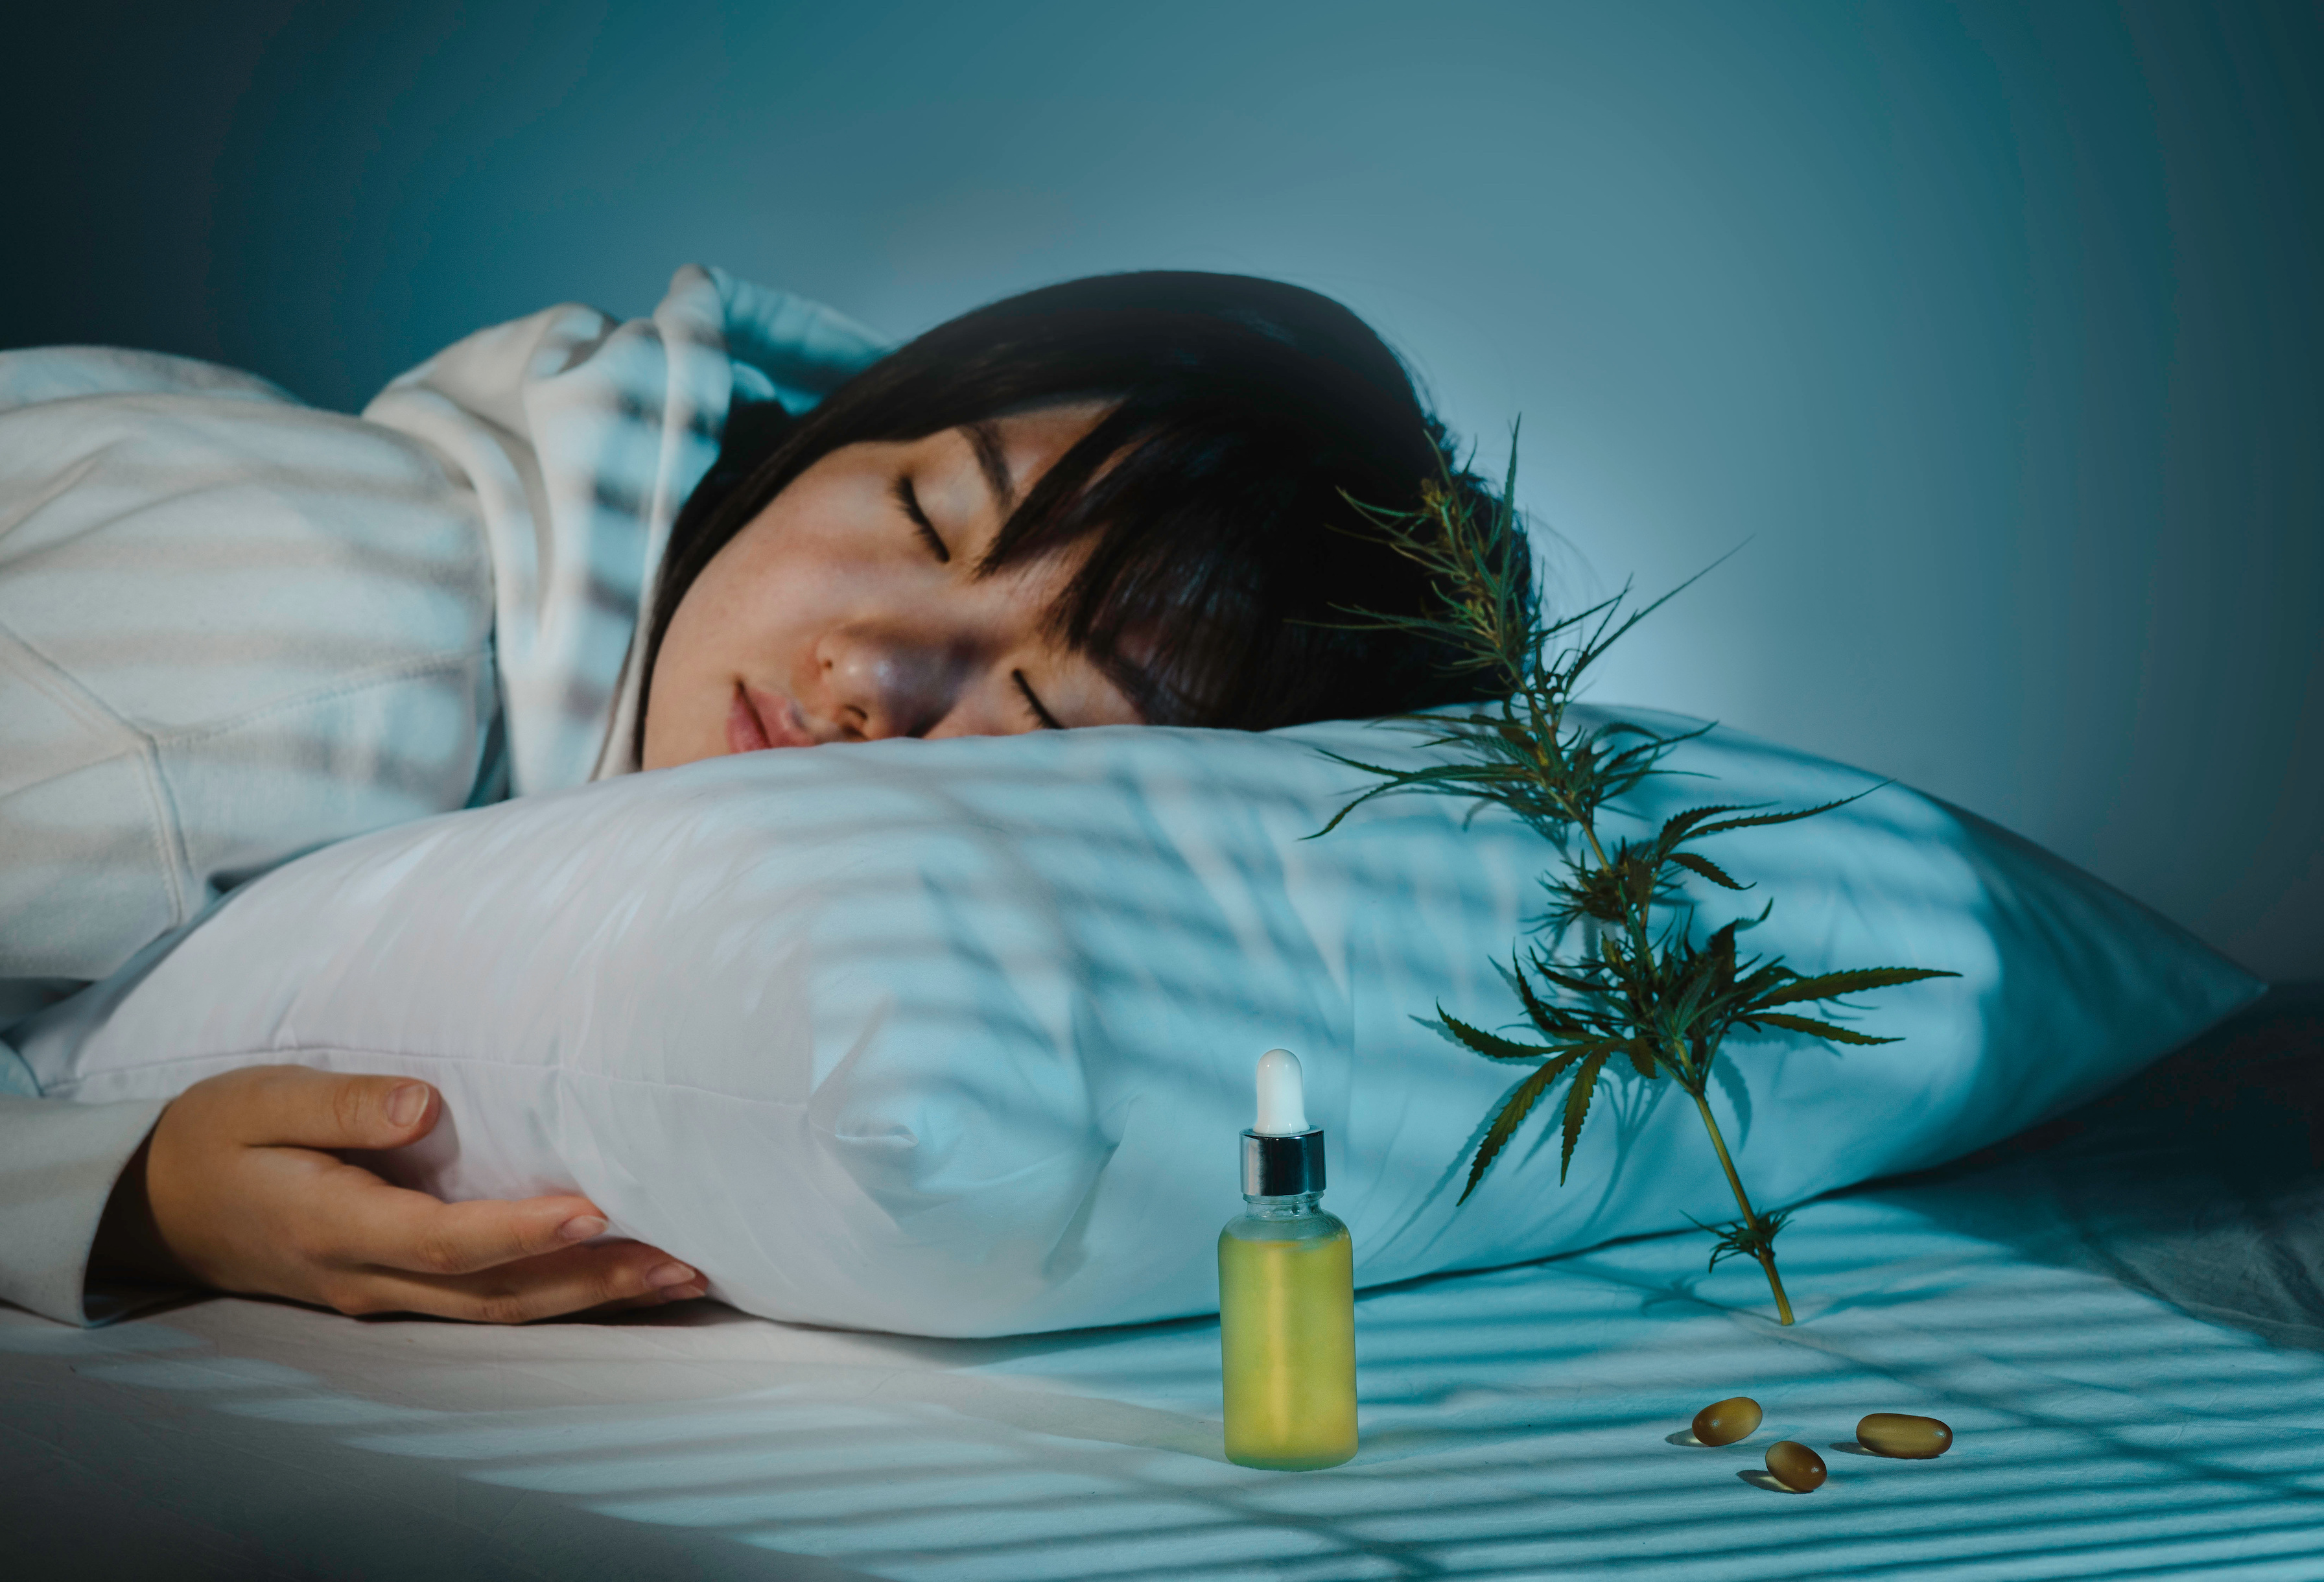 Le CBD serait efficace contre les troubles du sommeil. © Айман Дайрабаева, Adobe Stock